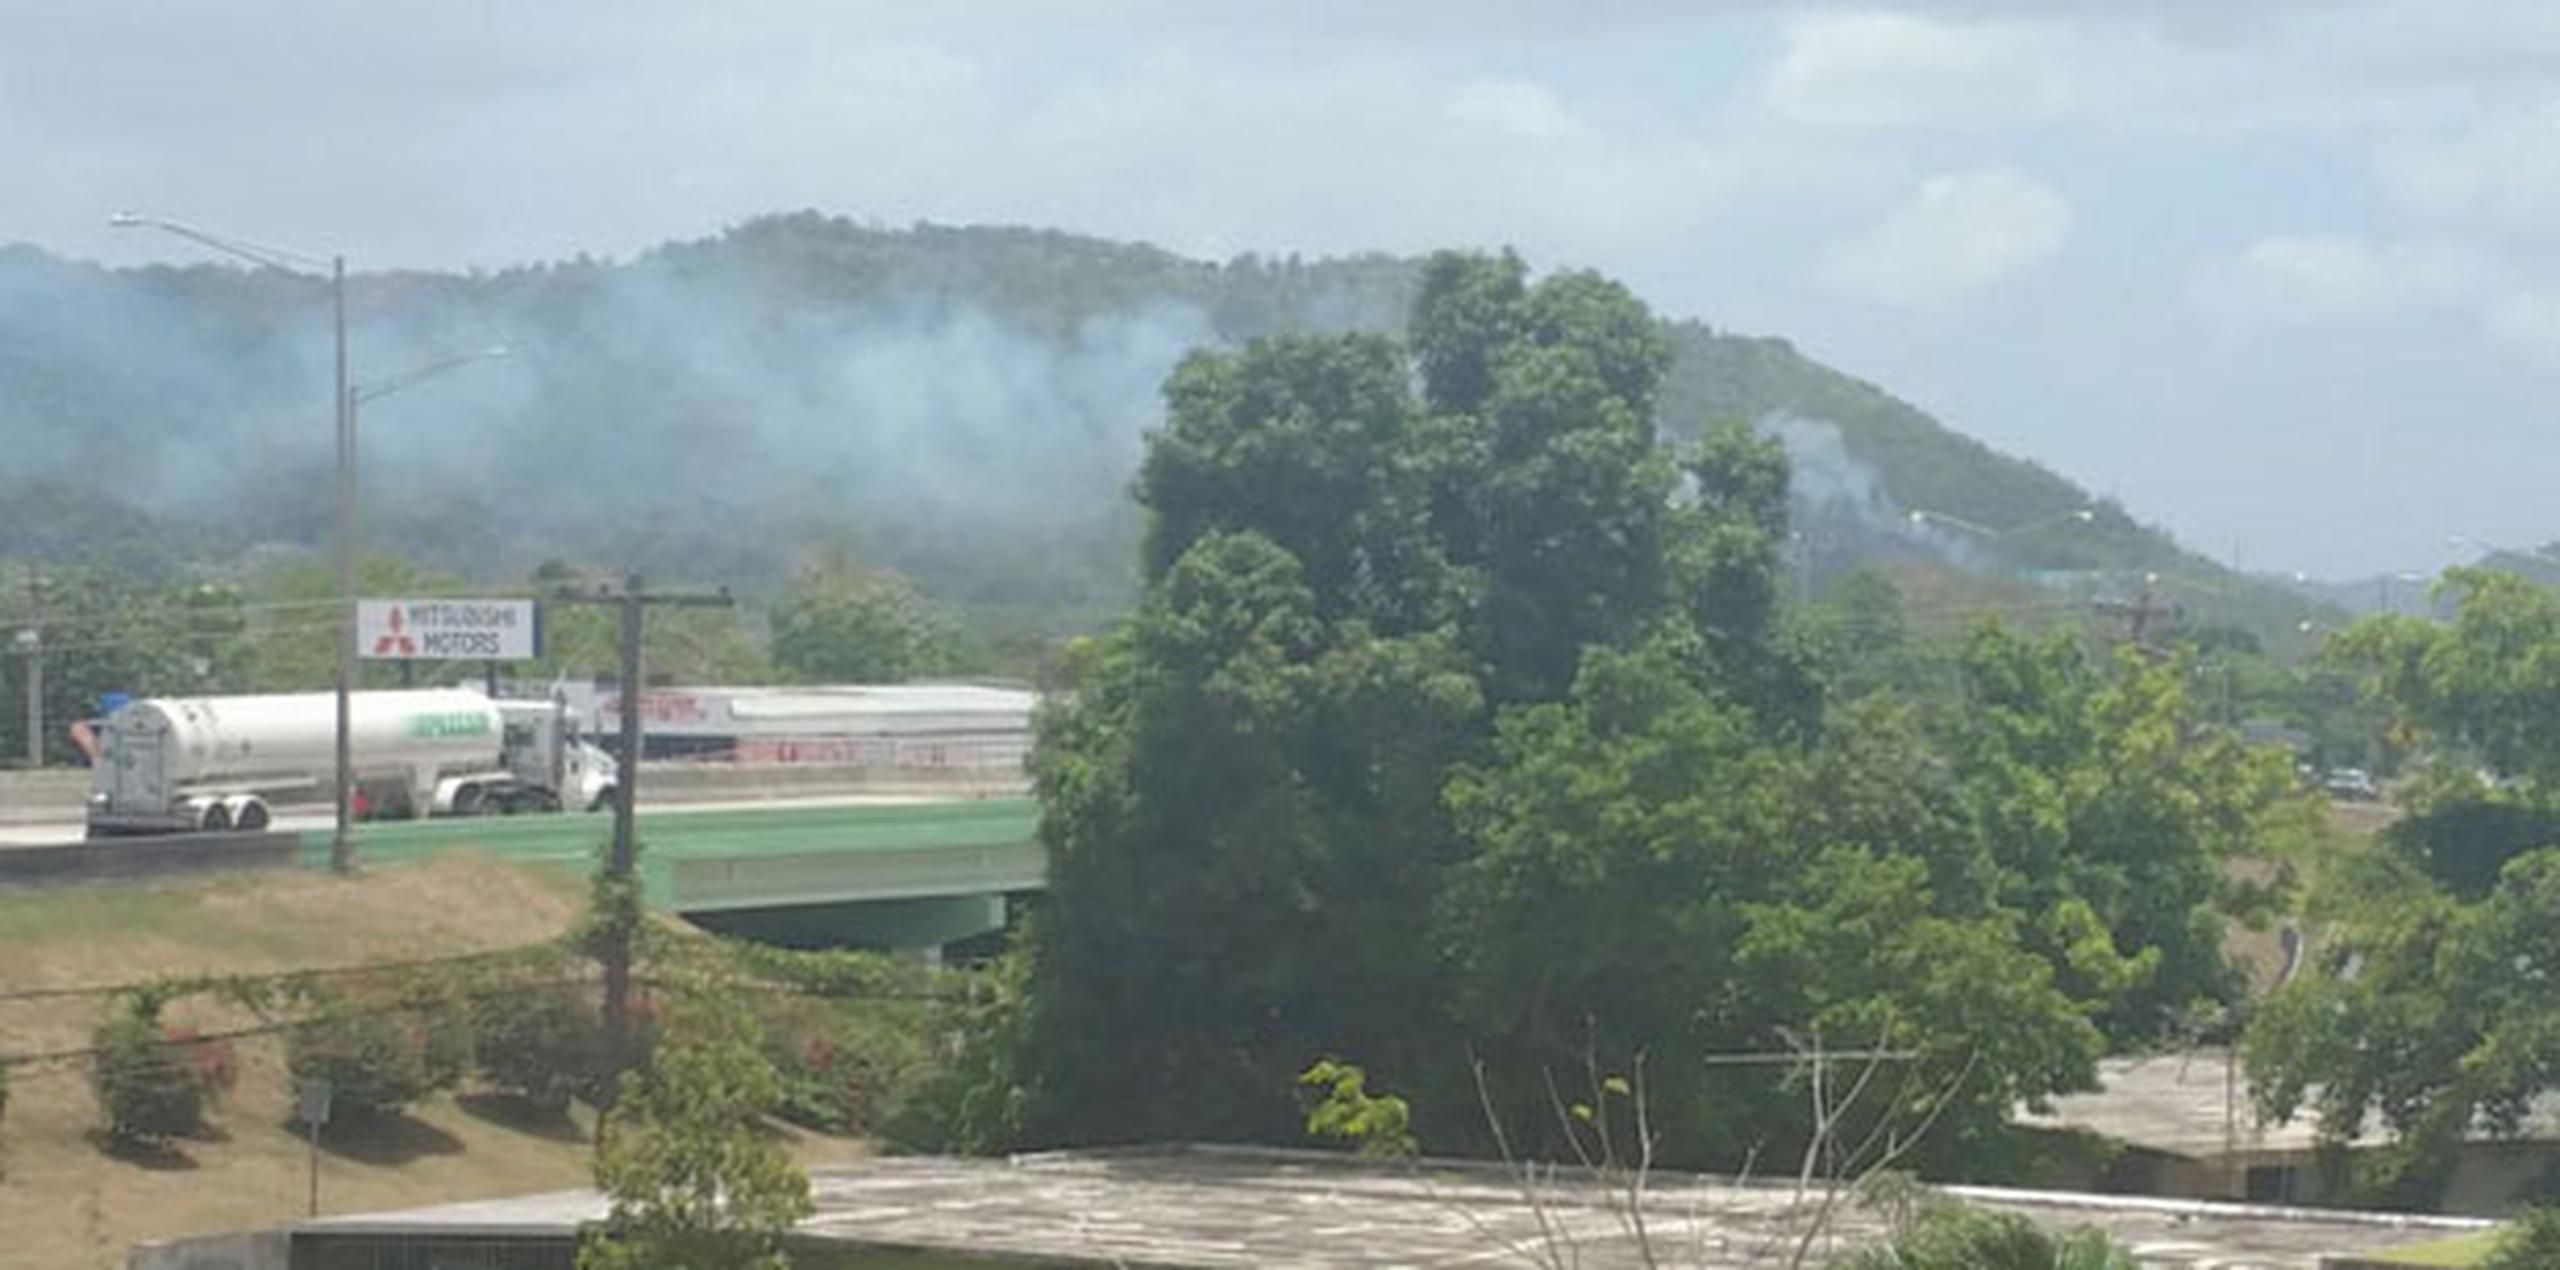 Al mediodía de este viernes, los bomberos mantienen confinado el incendio al noroeste del barrio Jagua de Gurabo. (Suministrada/Lisha M. Sánchez)